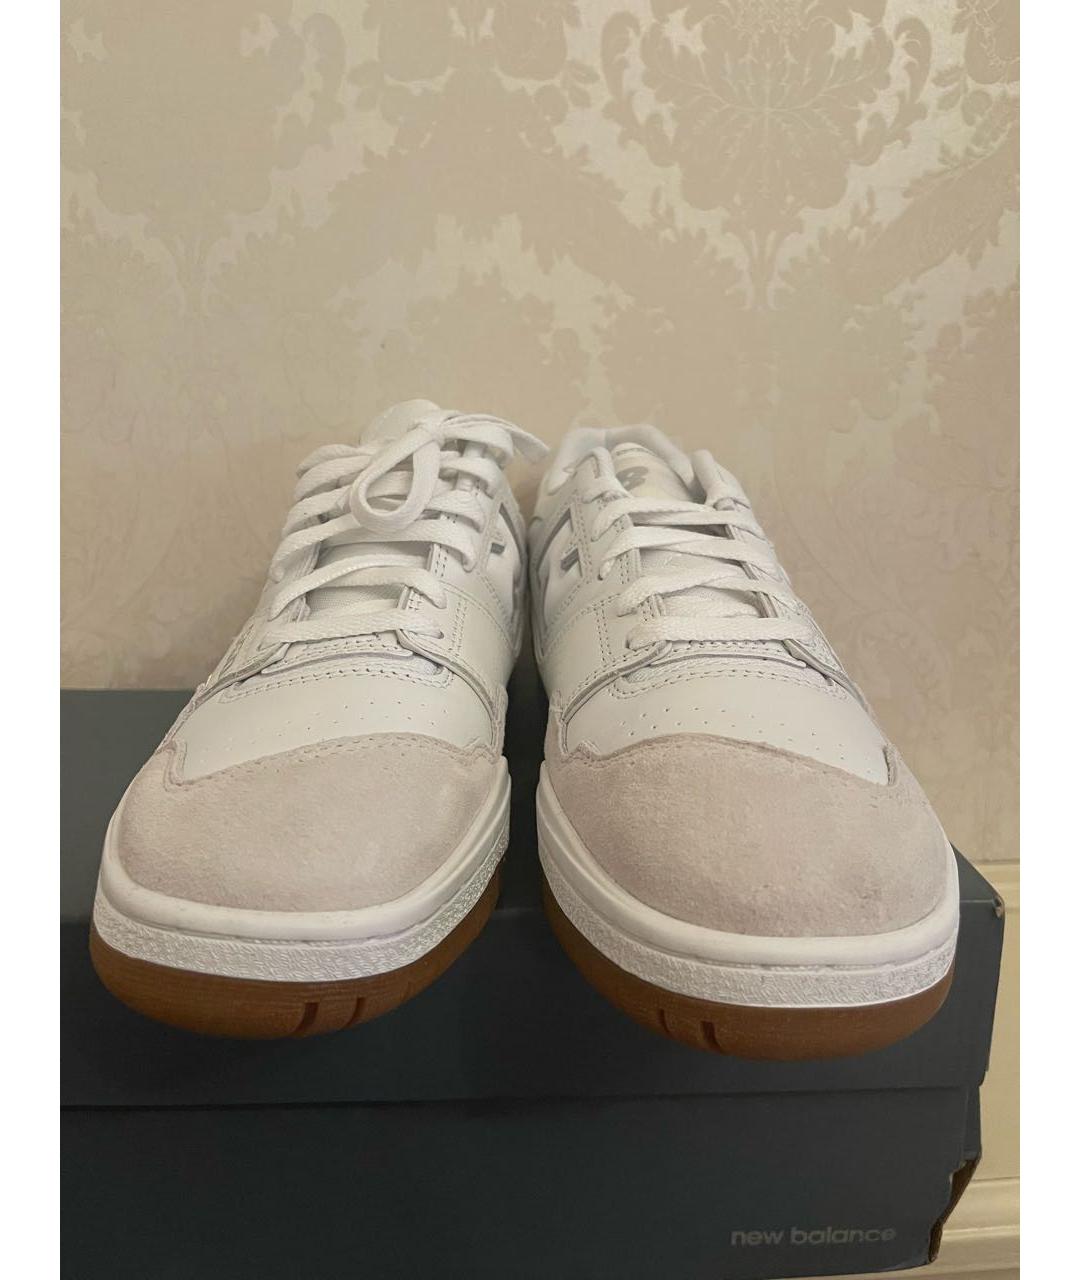 NEW BALANCE Белые кожаные низкие кроссовки / кеды, фото 2